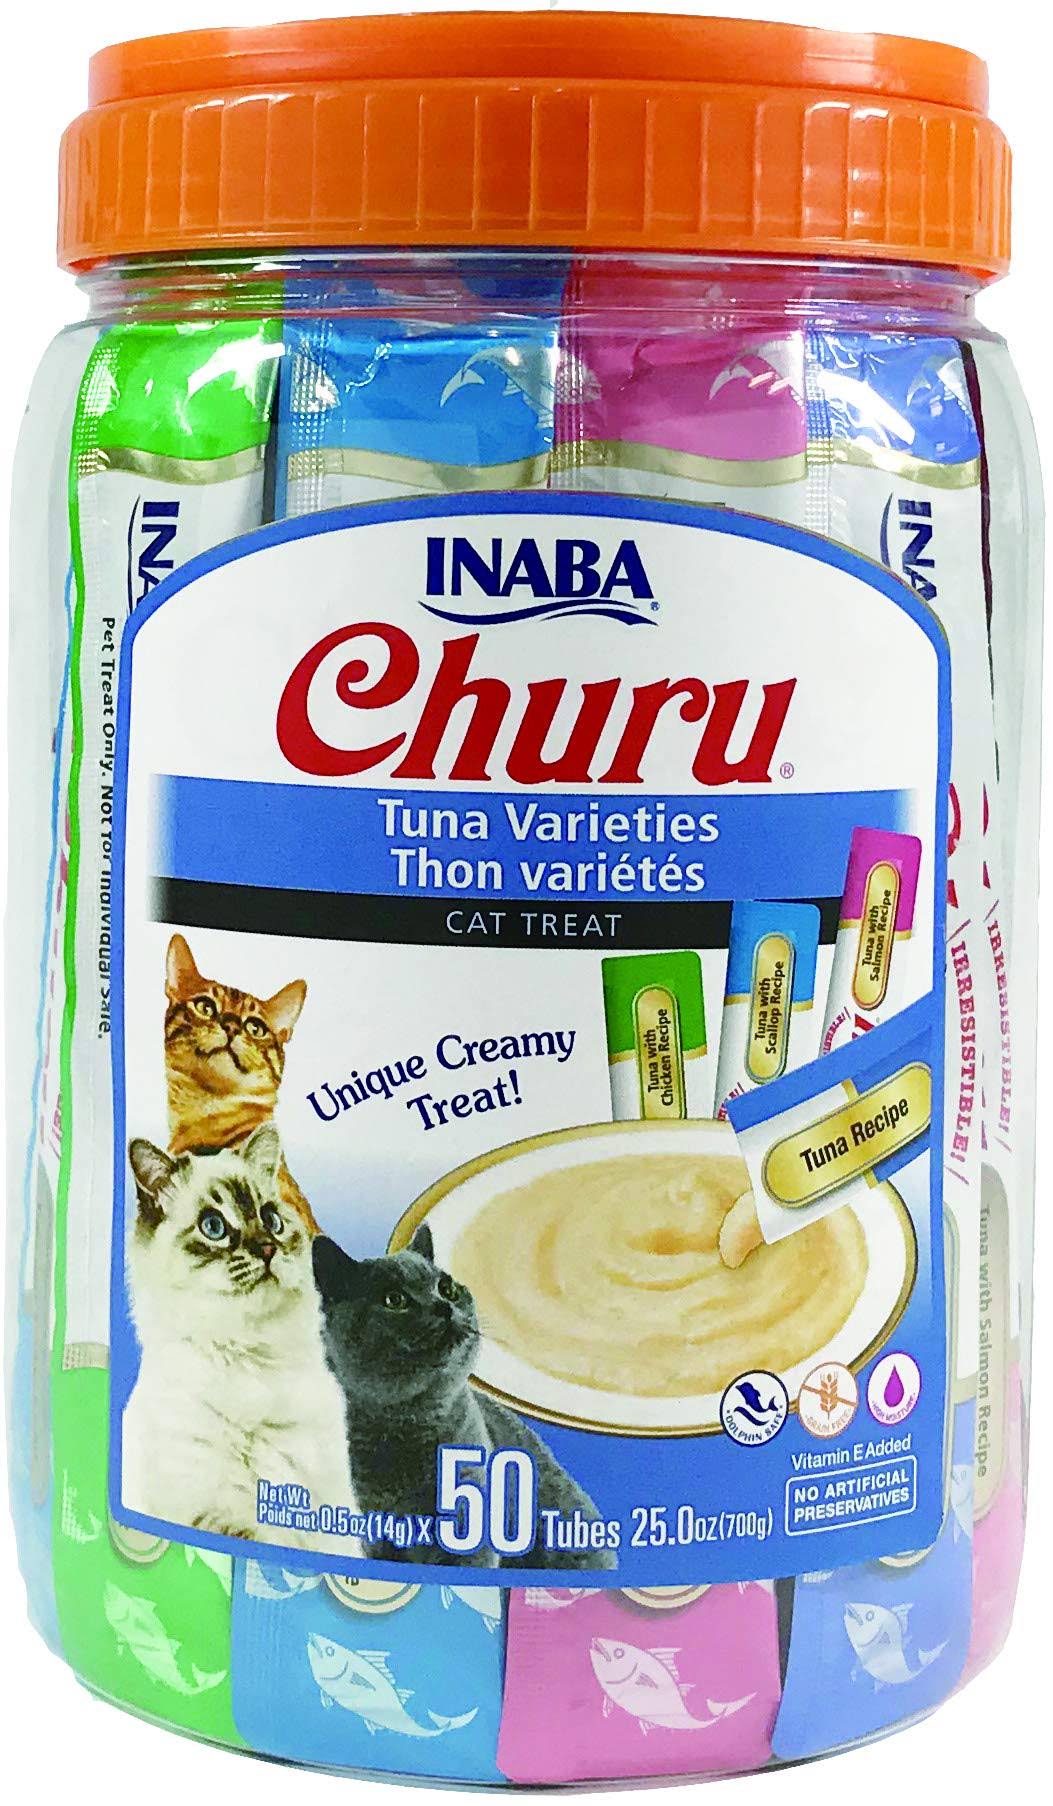 Inaba Churu Purée Tuna Varieties Cat Treats 50 Tubes